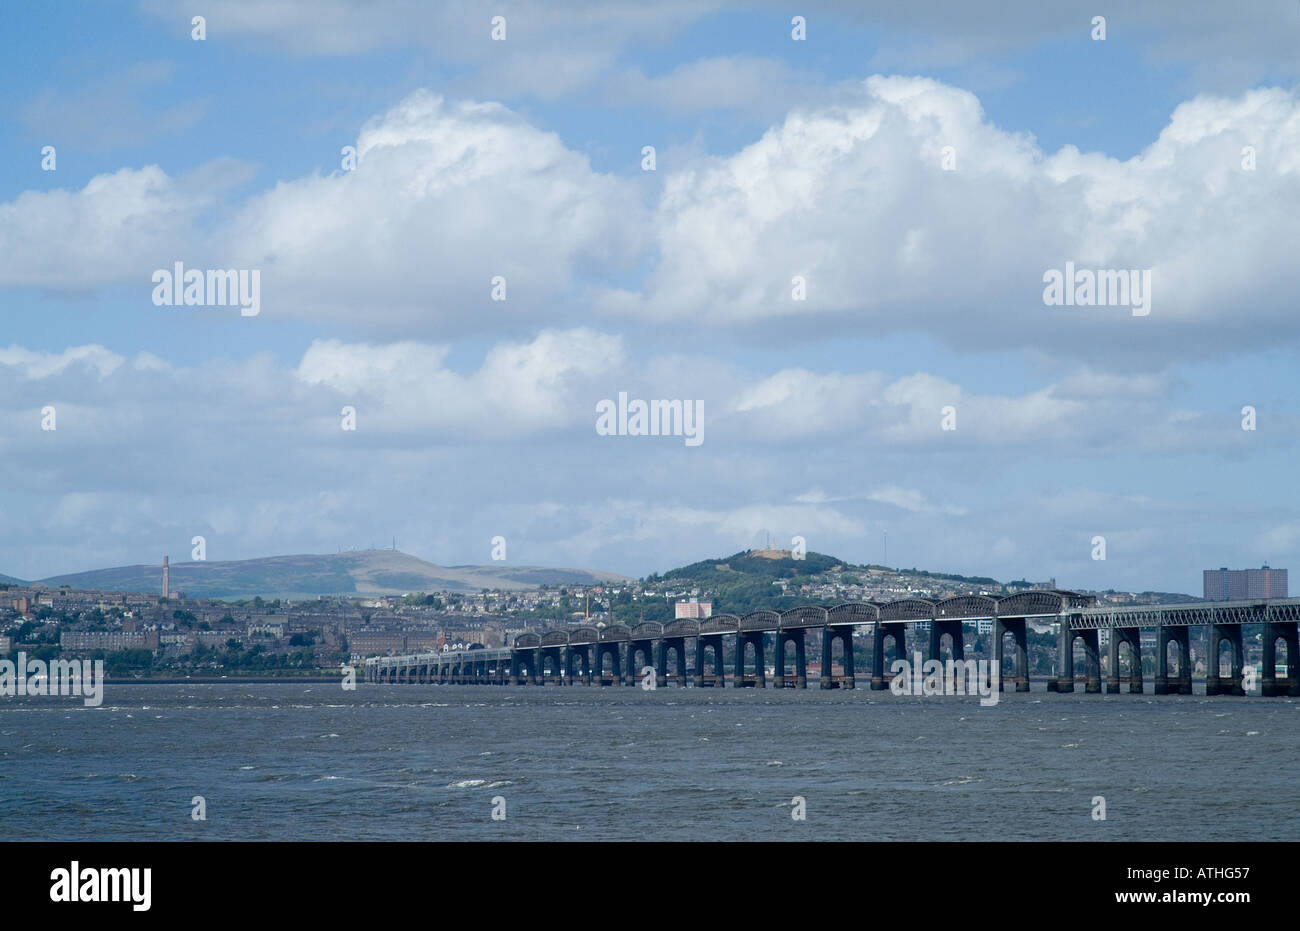 pont du chemin de fer dh Tay PONTS écossais DUNDEE ANGUS traversant la rivière Tay avec l'estuaire de la ville dundee scotland Banque D'Images